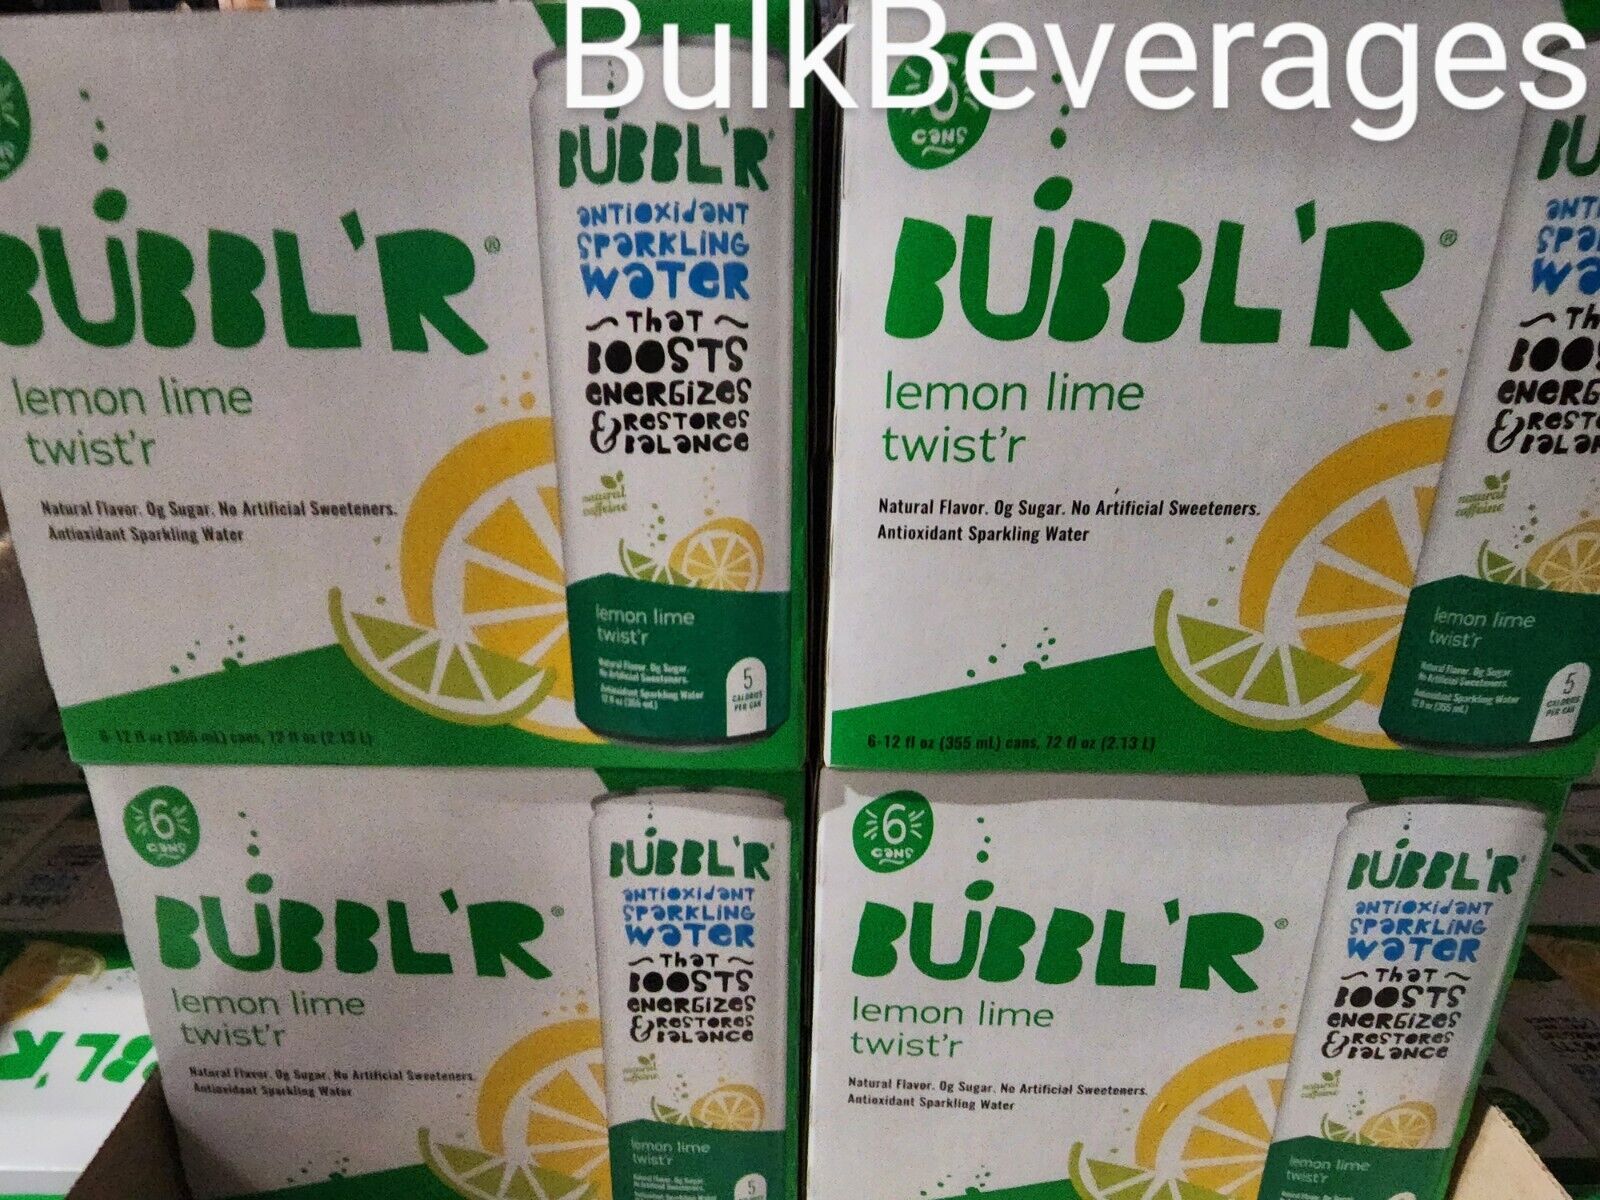 Bubbl'r Sparkling Antioxidant Water | Lemon Lime Twist'r | 12oz/12pk(2-6pk) NEW 